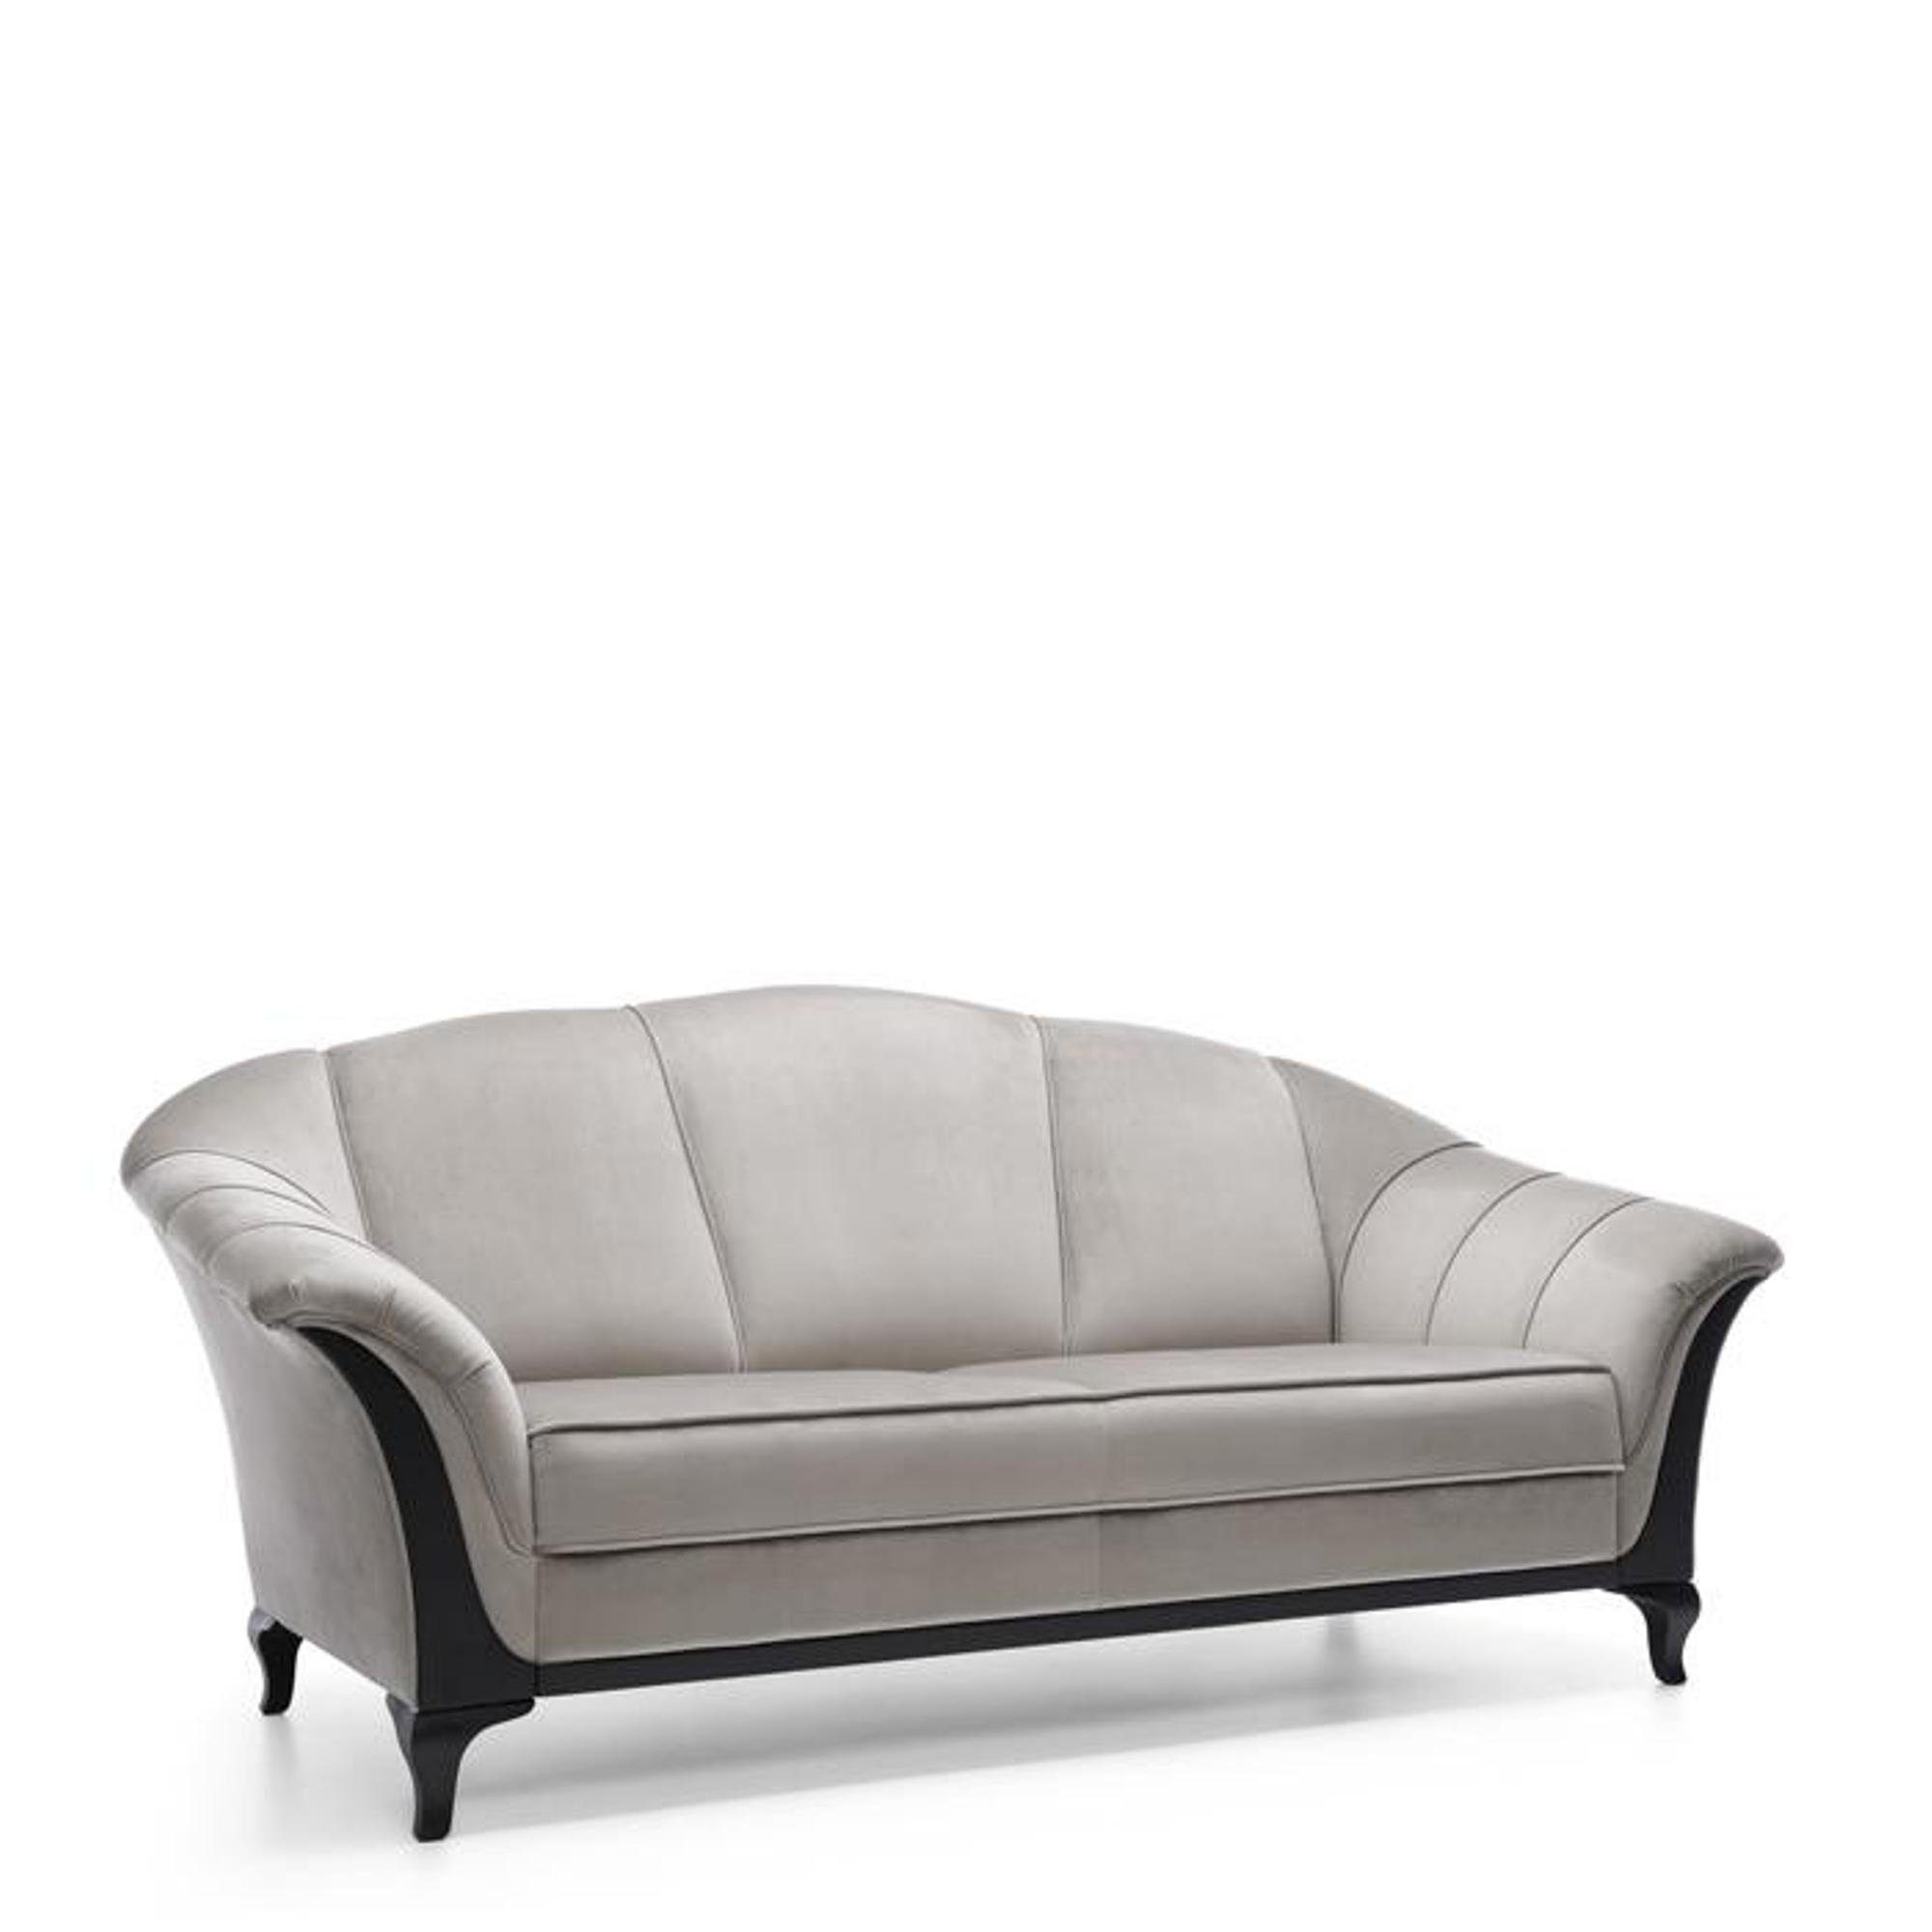 JVmoebel Sofa Luxus grauer Dreisitzer Modernes Design Couch Neu, Made in Europe